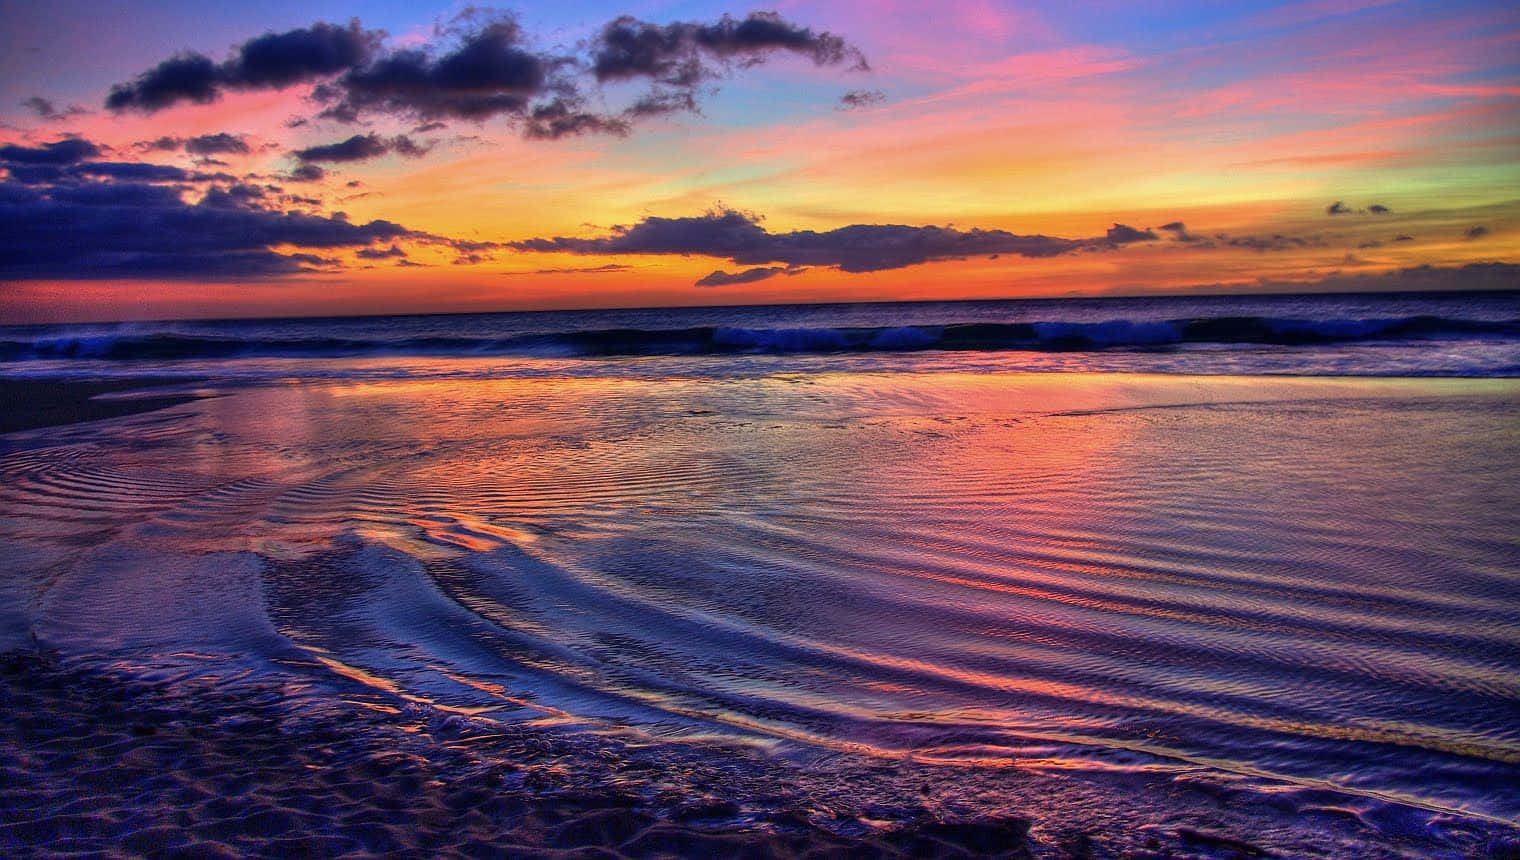 Enjoy the relaxing view of a stunning Hawaiian sunset. Wallpaper